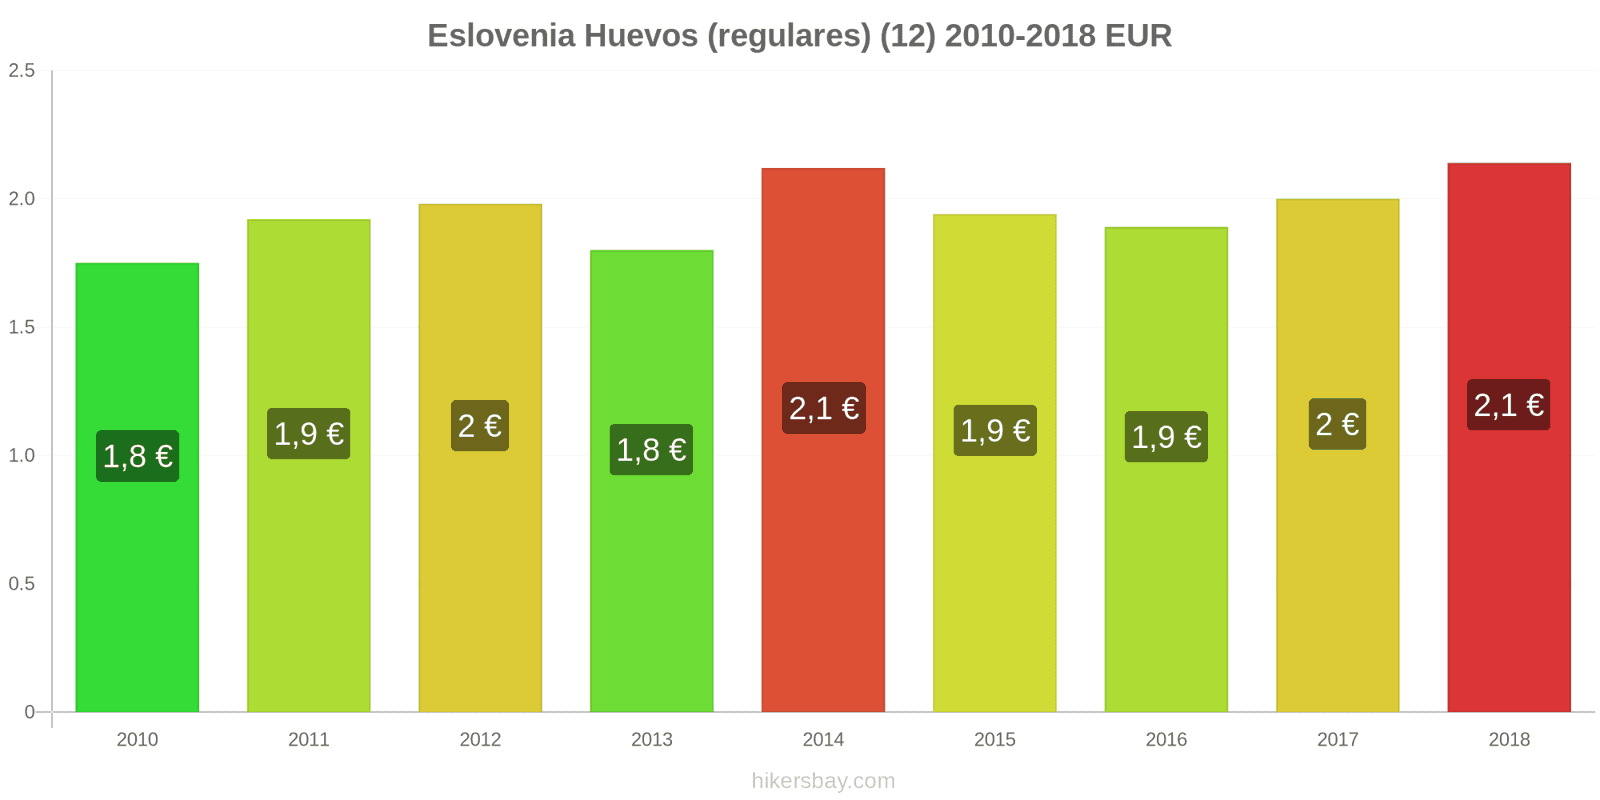 Eslovenia cambios de precios Huevos (normales) (12 unidades) hikersbay.com